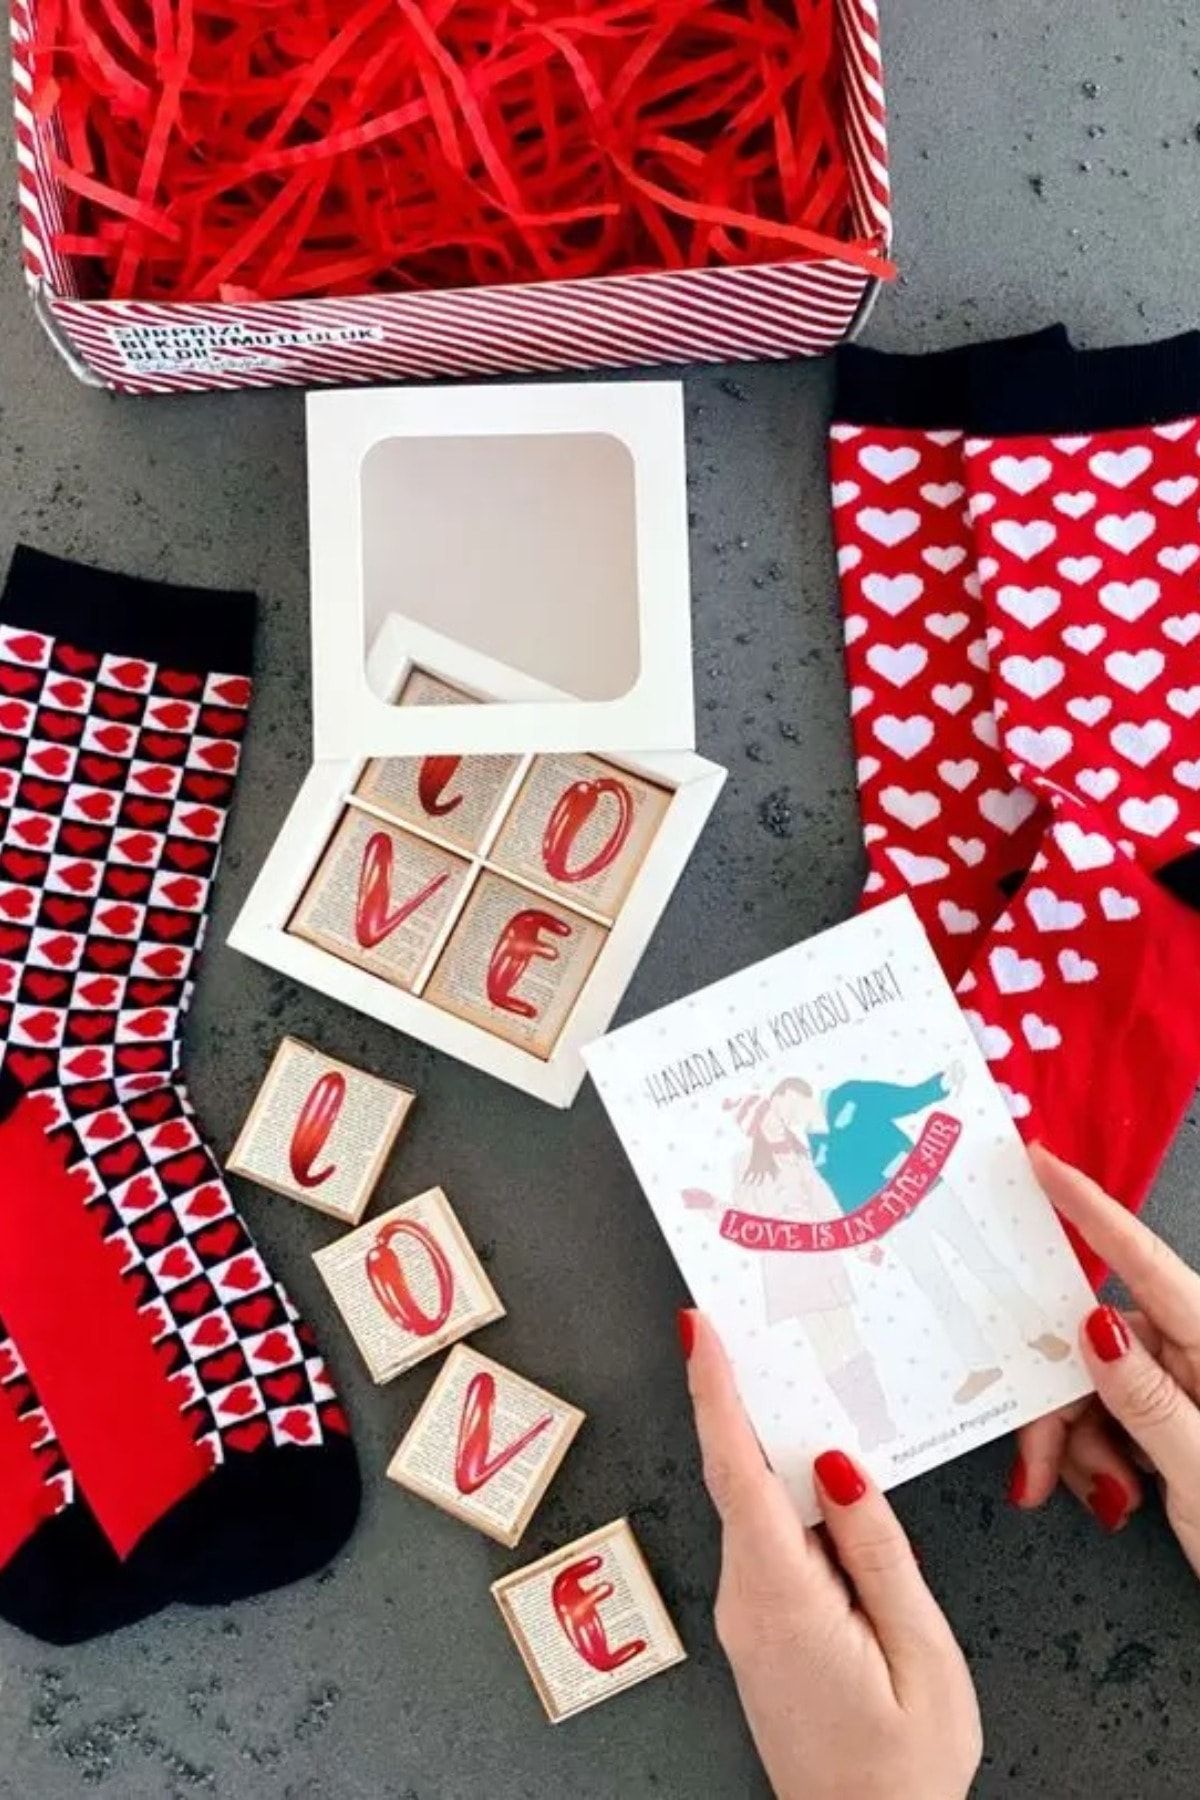 Bikutumutluluk Aşk Dolu Çikolata Sevgili Çorabı Kırmızı Kalp Hediye Kutusu